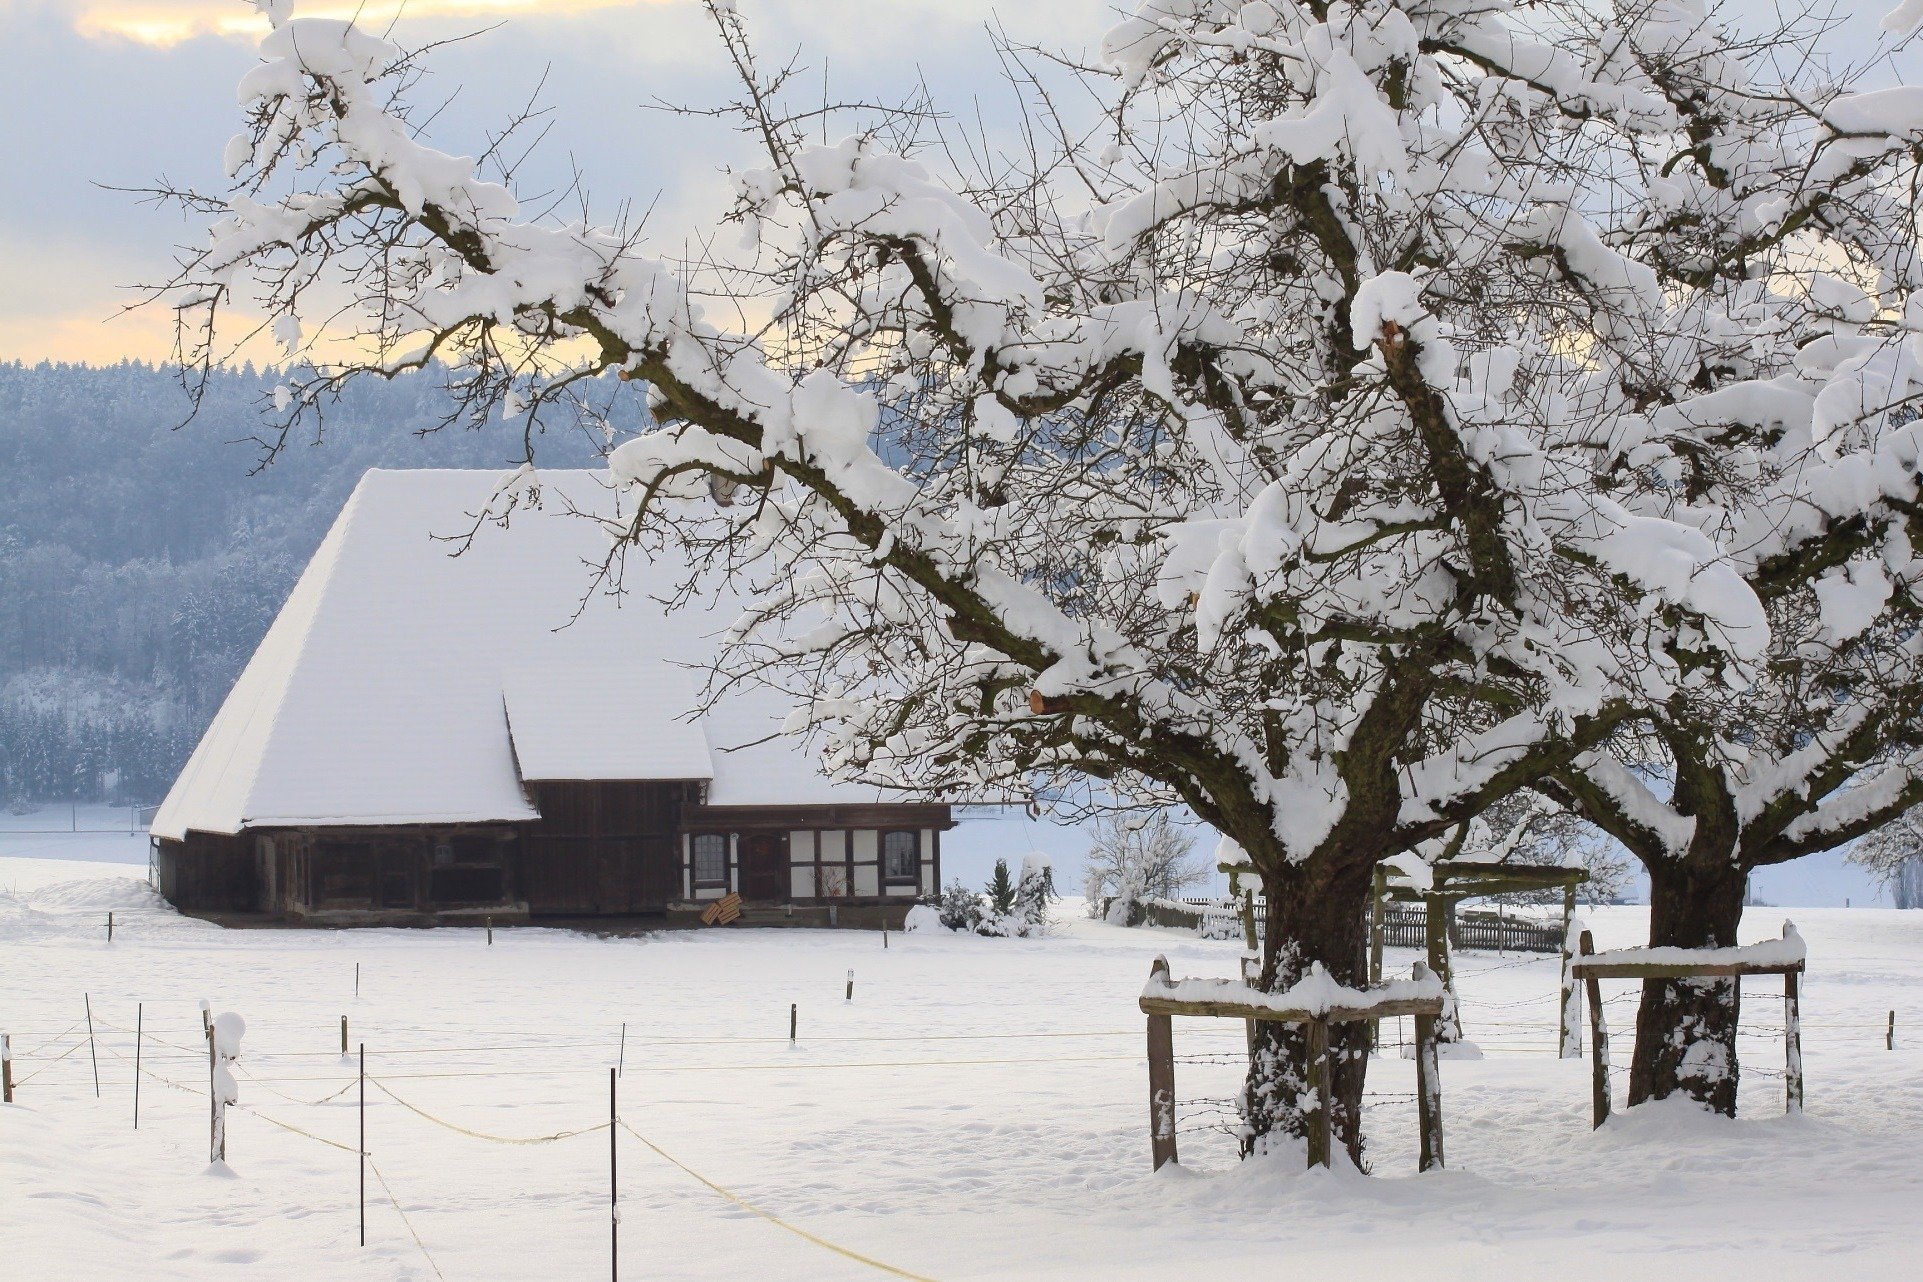 Снегом укрыты дома. Домик в снегу. Деревня зимой. Зима домик деревья снег. Заснеженные крыши деревенских домов.